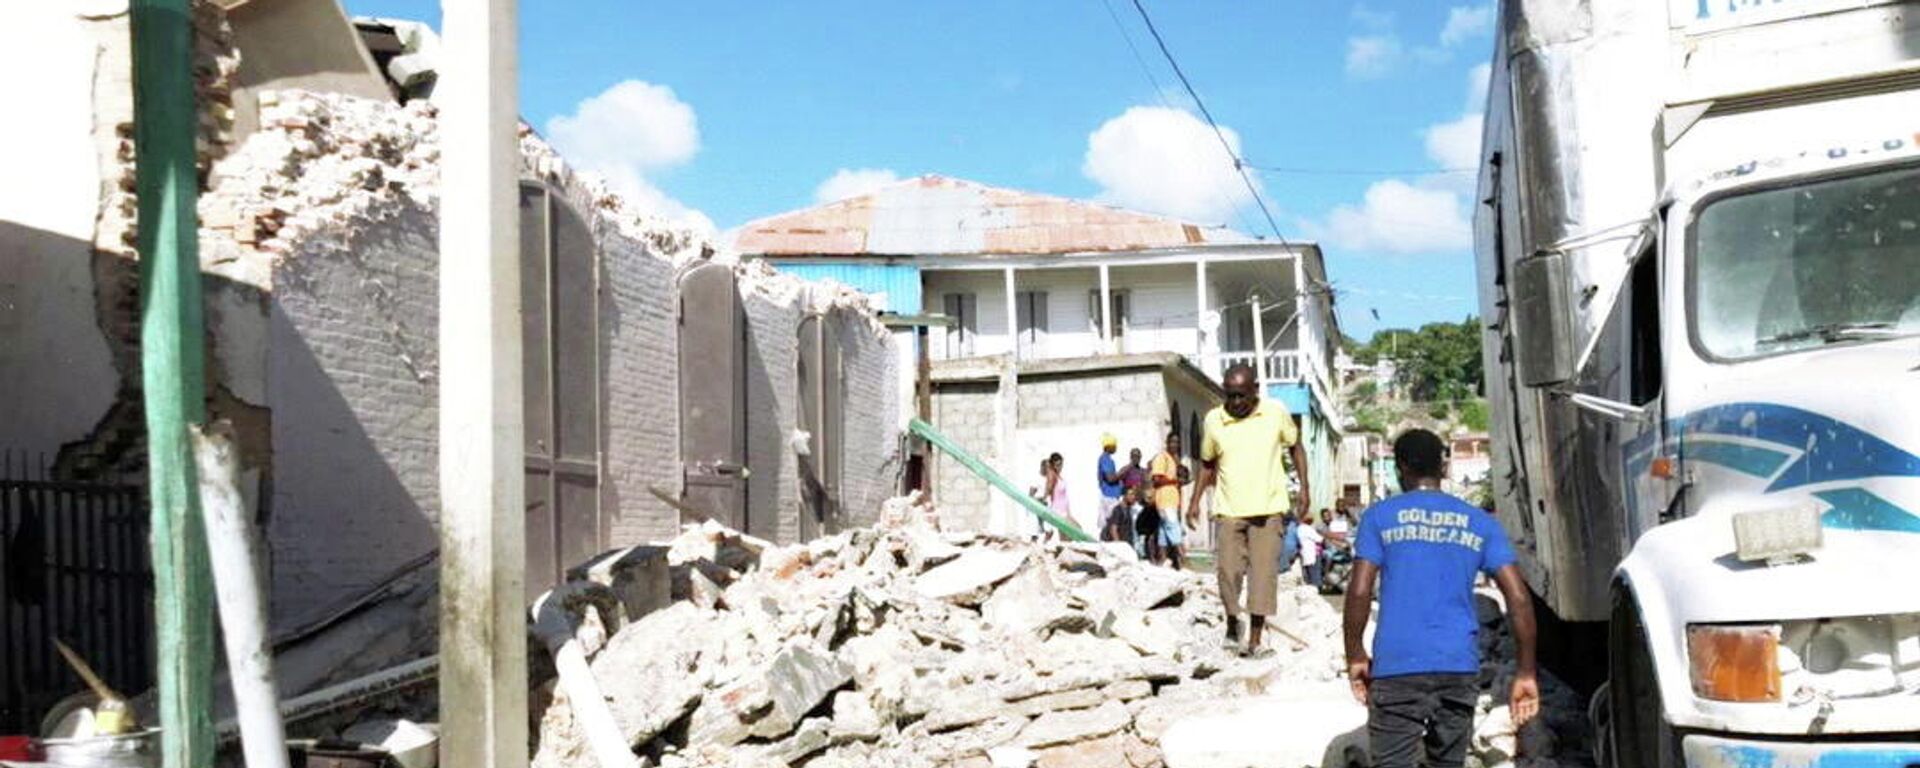 Haiti'nin Saint-Louis du Sud bölgesinin 12 kilometre kuzeydoğusunda meydana gelen 7.2 büyüklüğündeki depremin bilançosu artıyor.  - Sputnik Türkiye, 1920, 15.08.2021